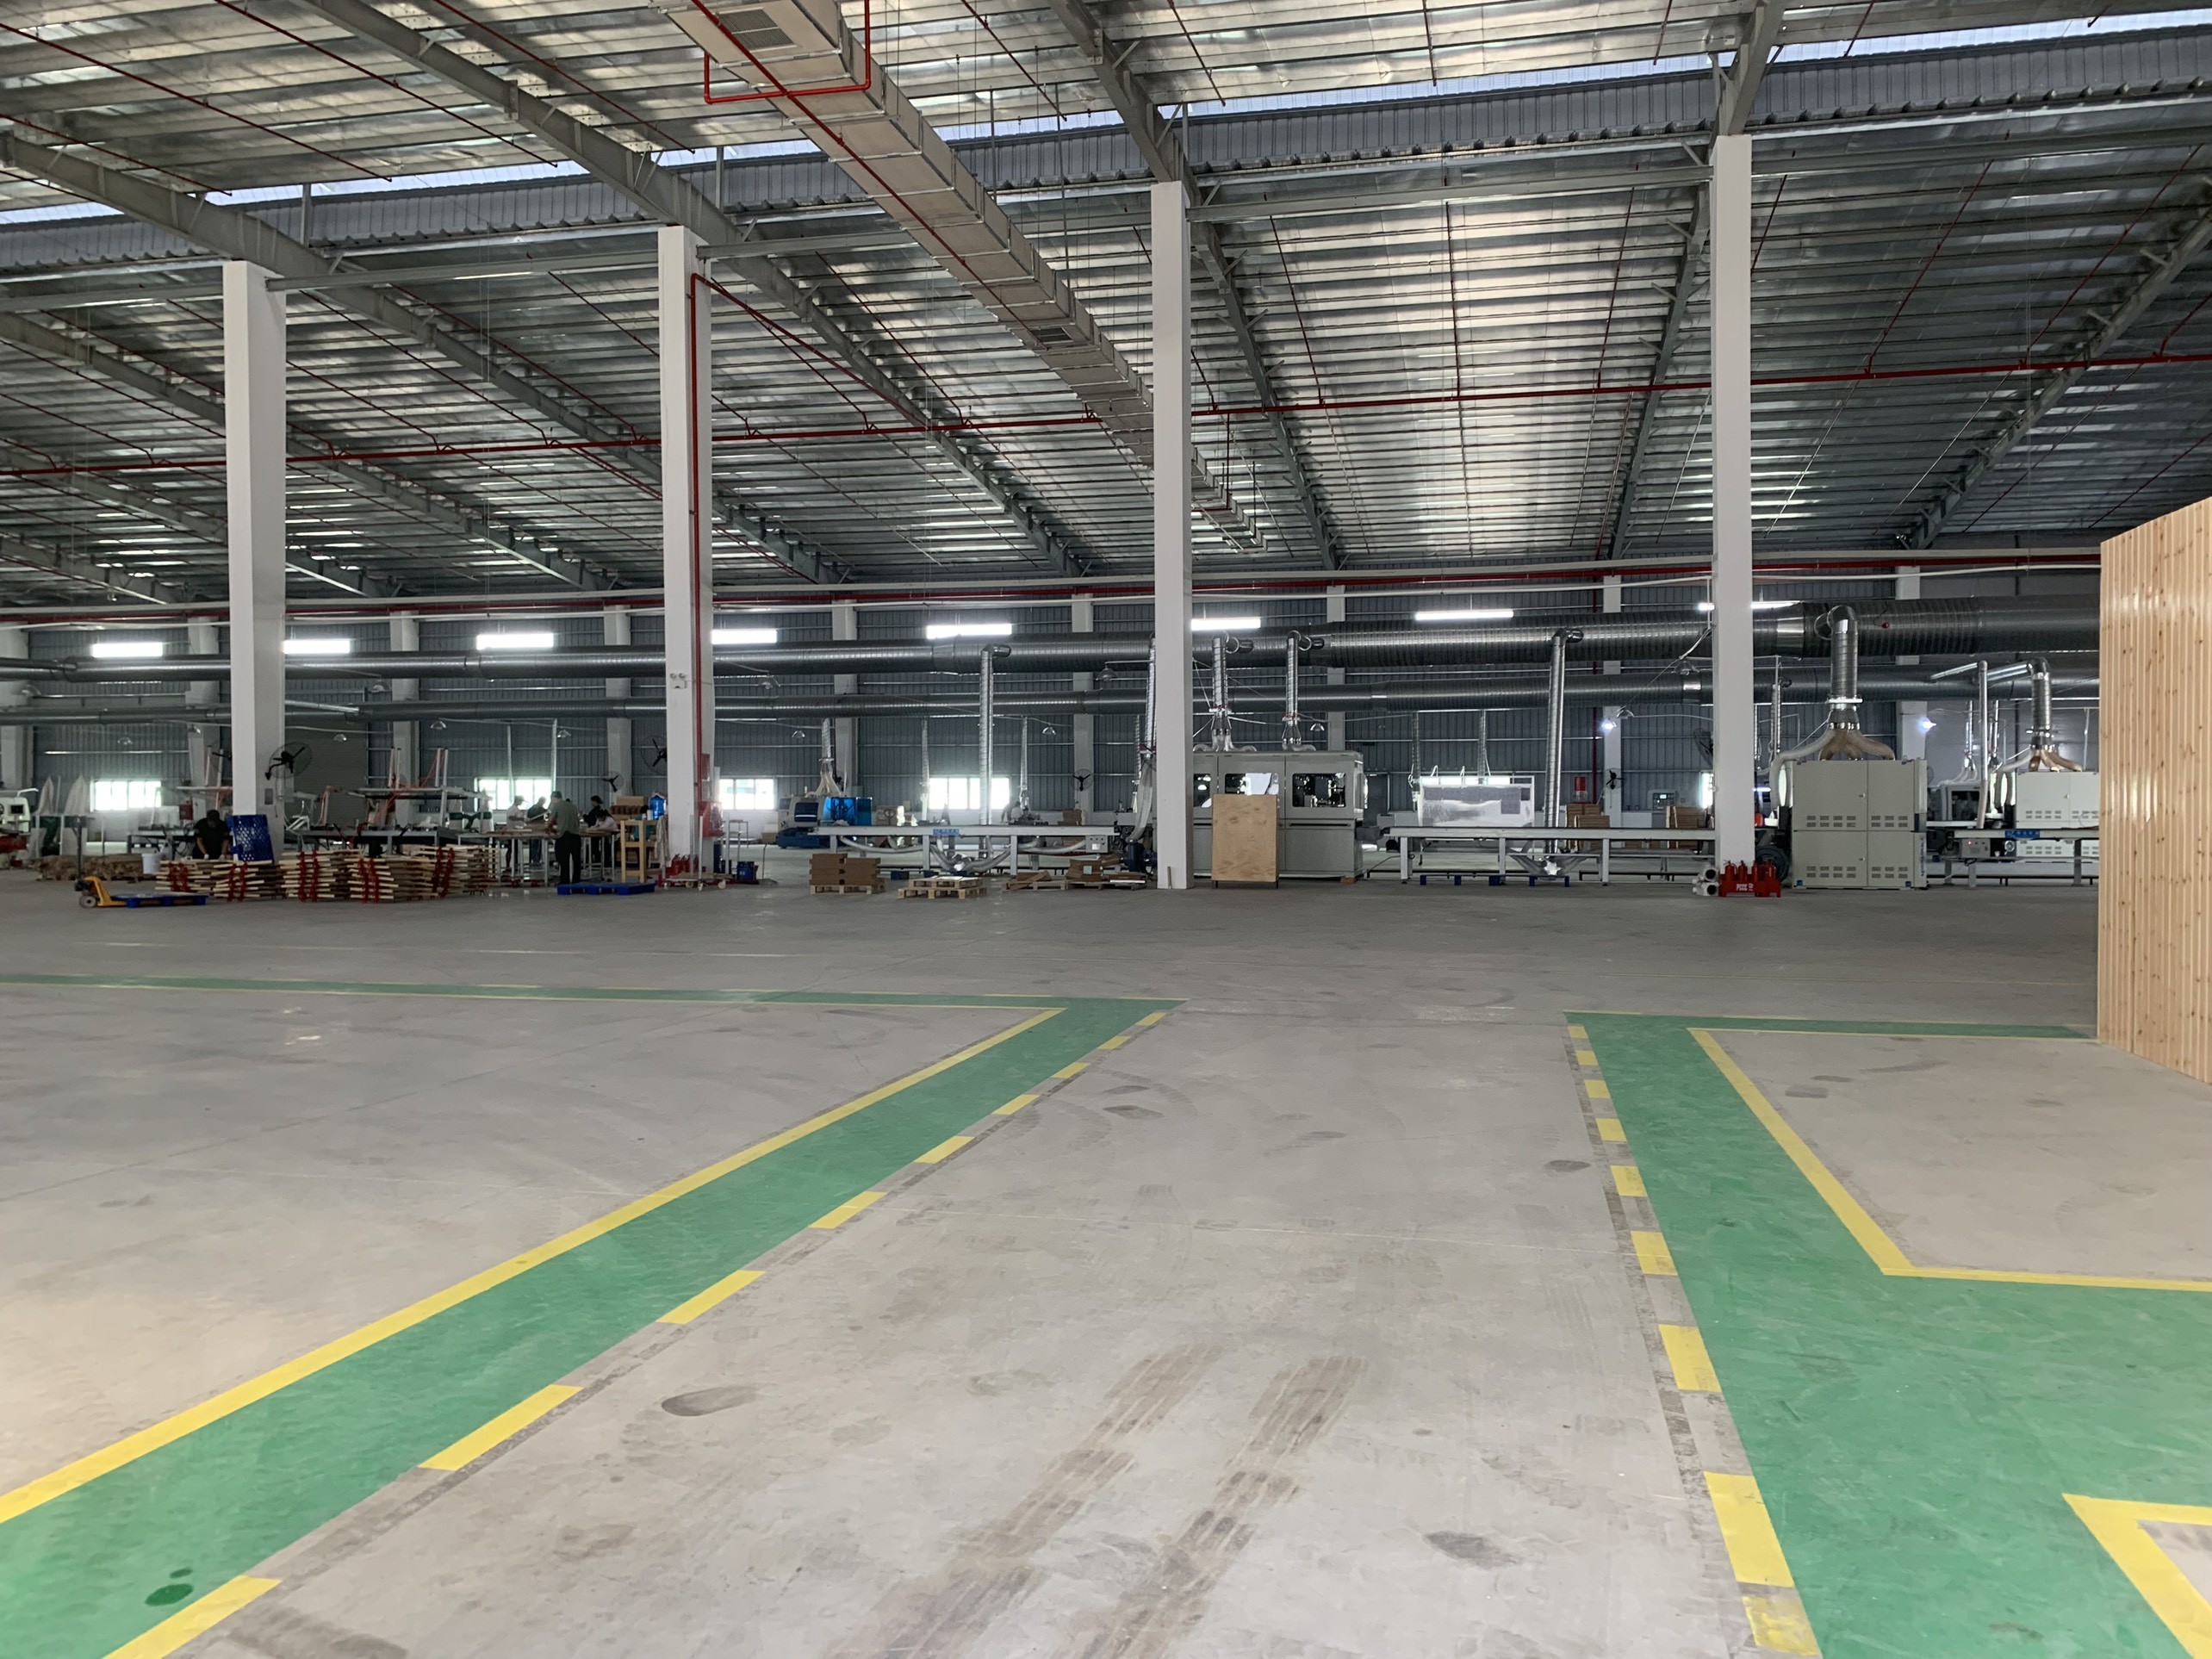 Cho thuê nhà xưởng mới trong và ngoài Khu CN Mỹ Hào, Hưng Yên DT đa dạng 1000m2 đến 200.000m2 2